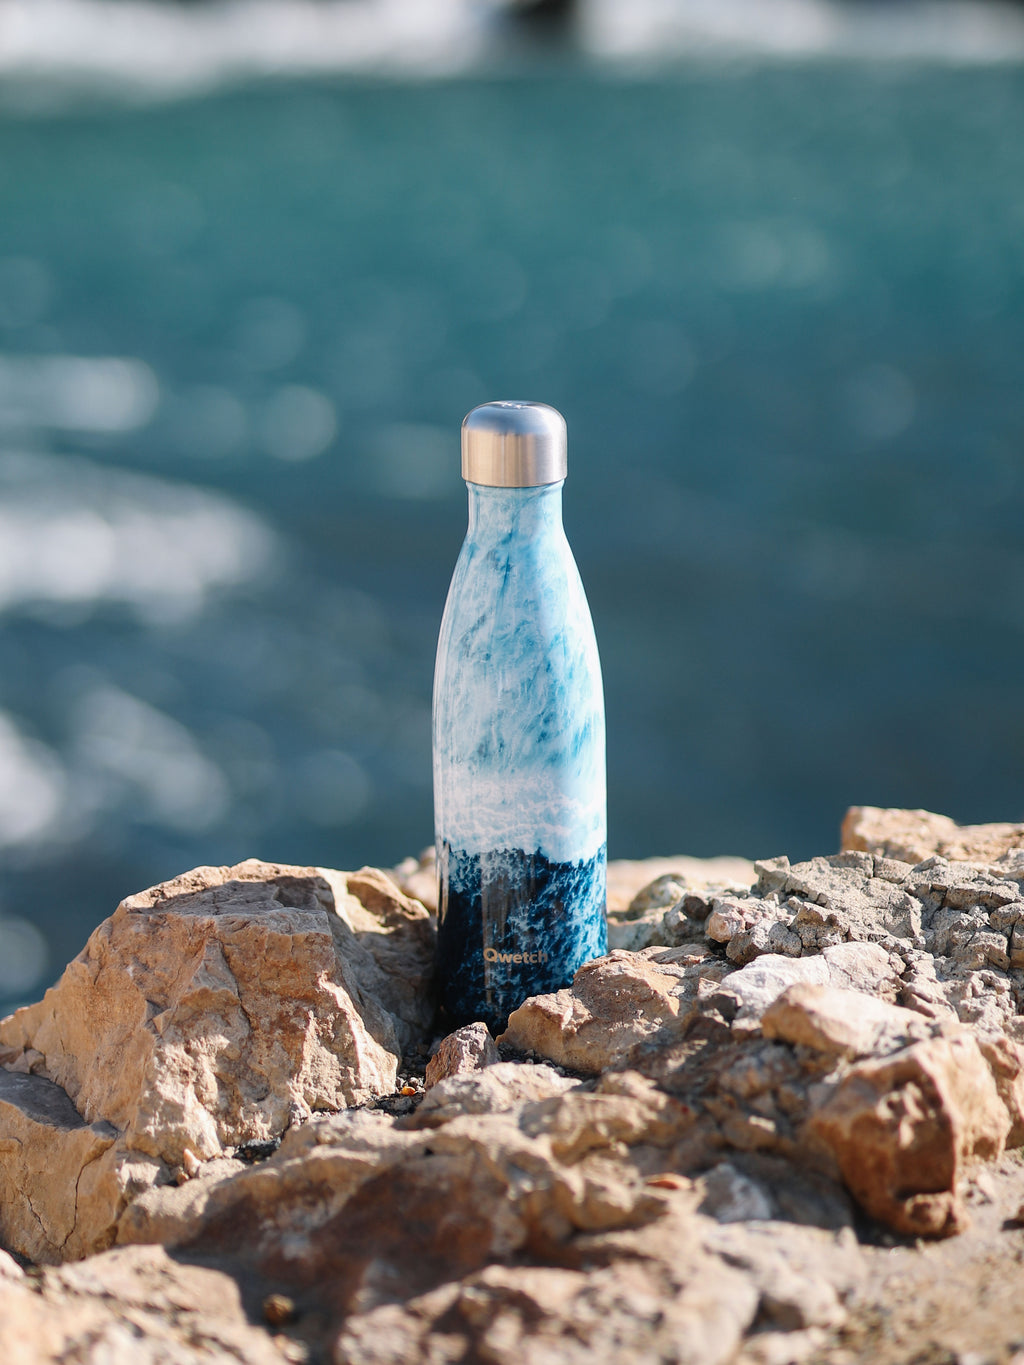 Botella isotérmica - Originals Amante del océano